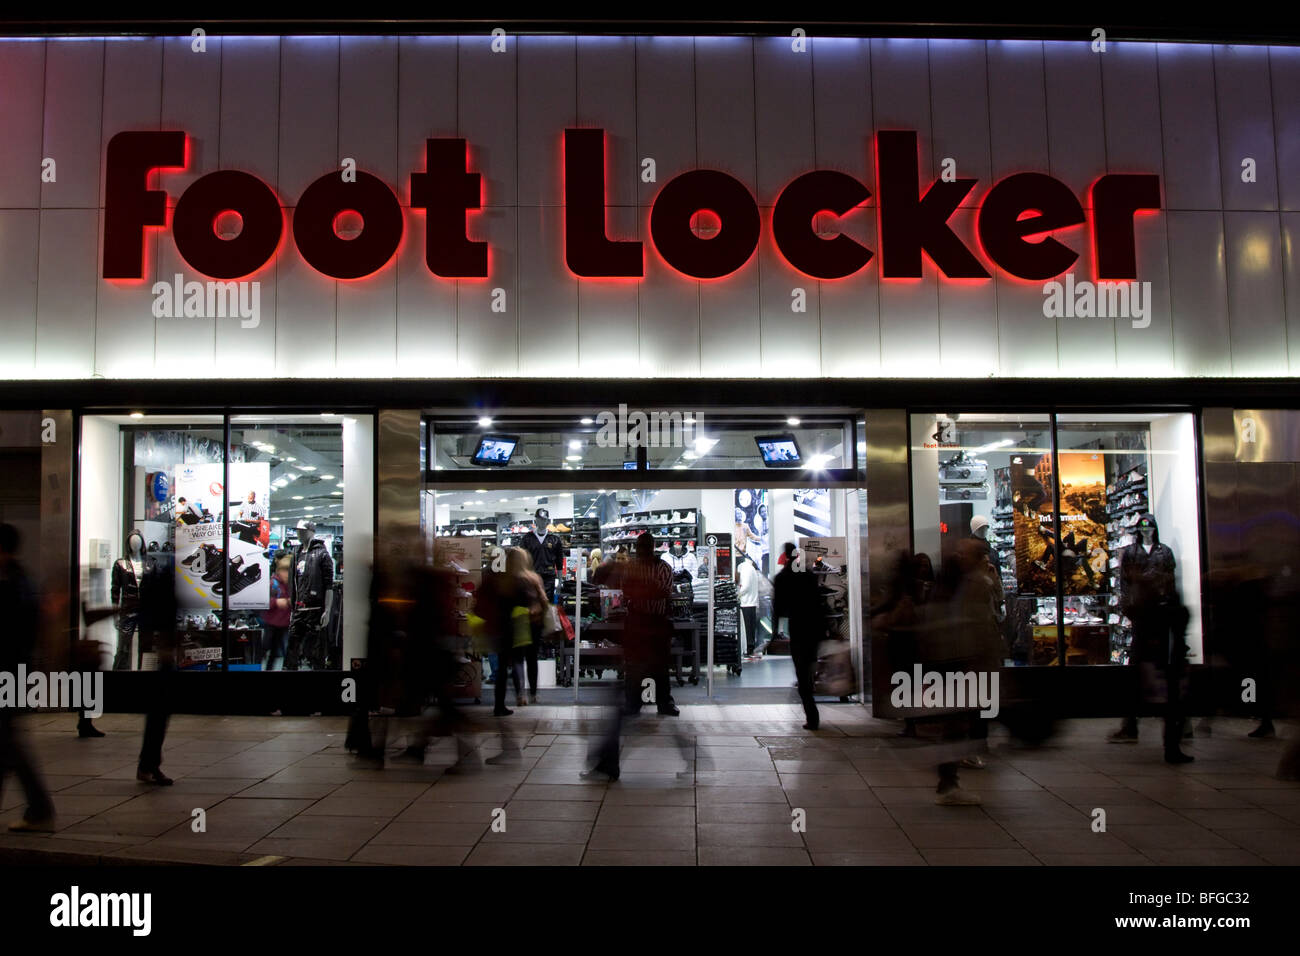 Foot Locker Sports Footwear Store - Oxford Street - London Stock Photo